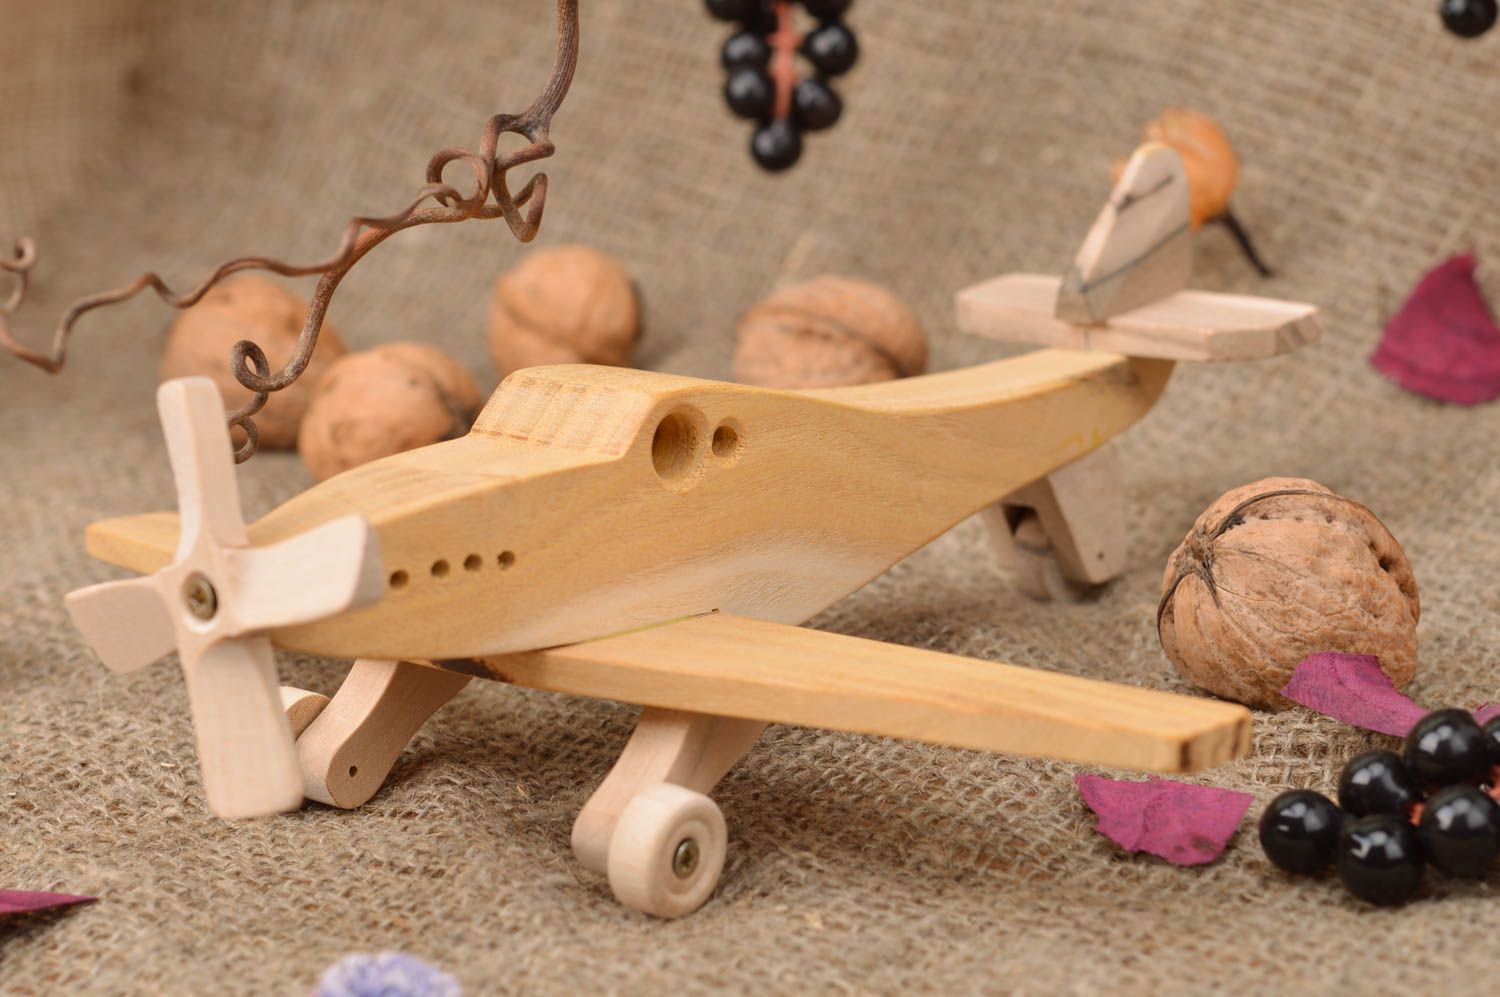 Деревянный самолет мустанг игрушечный хэндмэйд экологически чистый для мальчиков фото 1